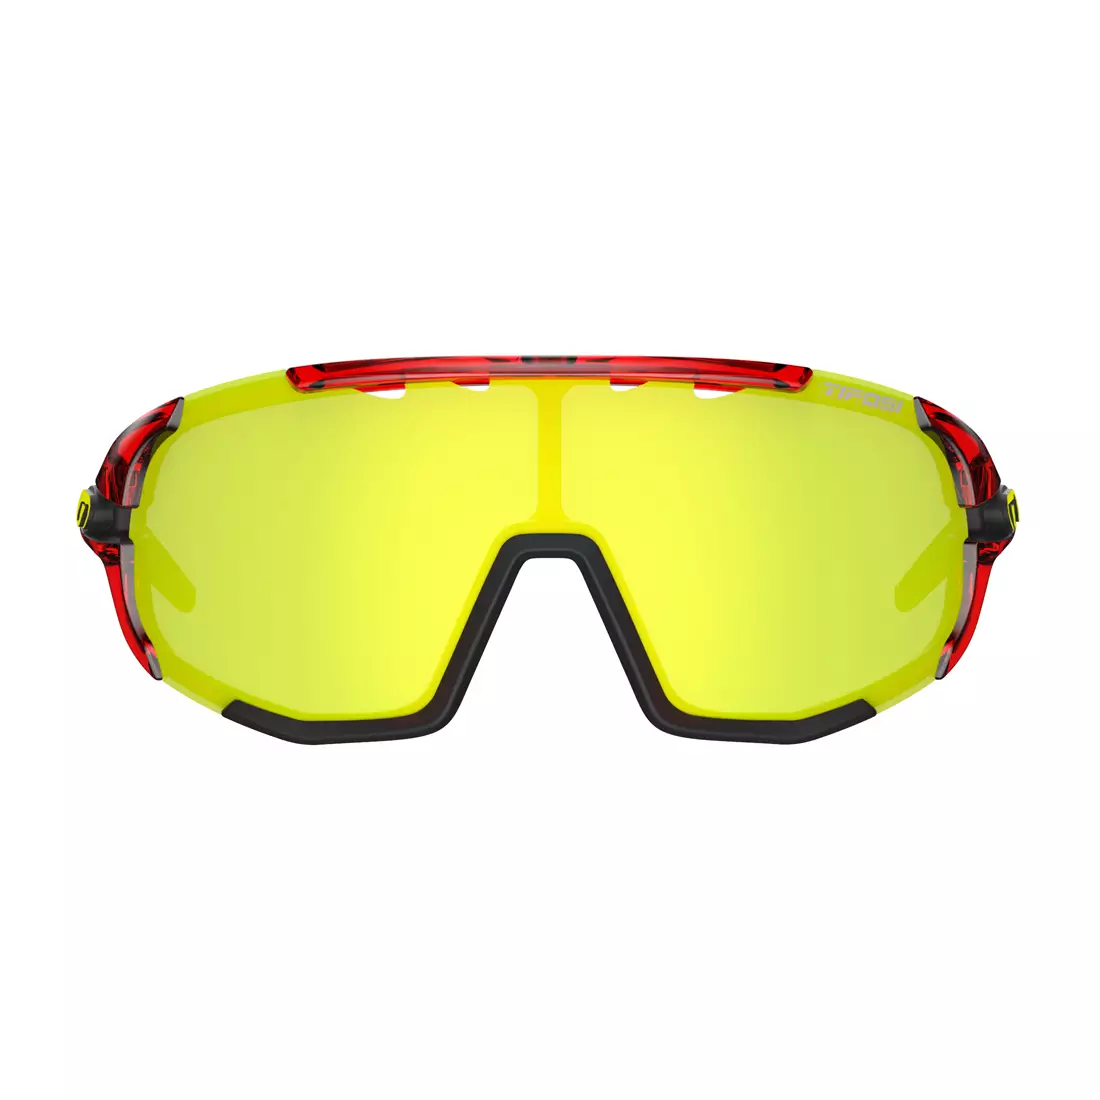 TIFOSI Sportbrillen mit austauschbaren Gläsern sledge clarion crystal red (Clarion Yellow, AC Red, Clear) TFI-1630109827